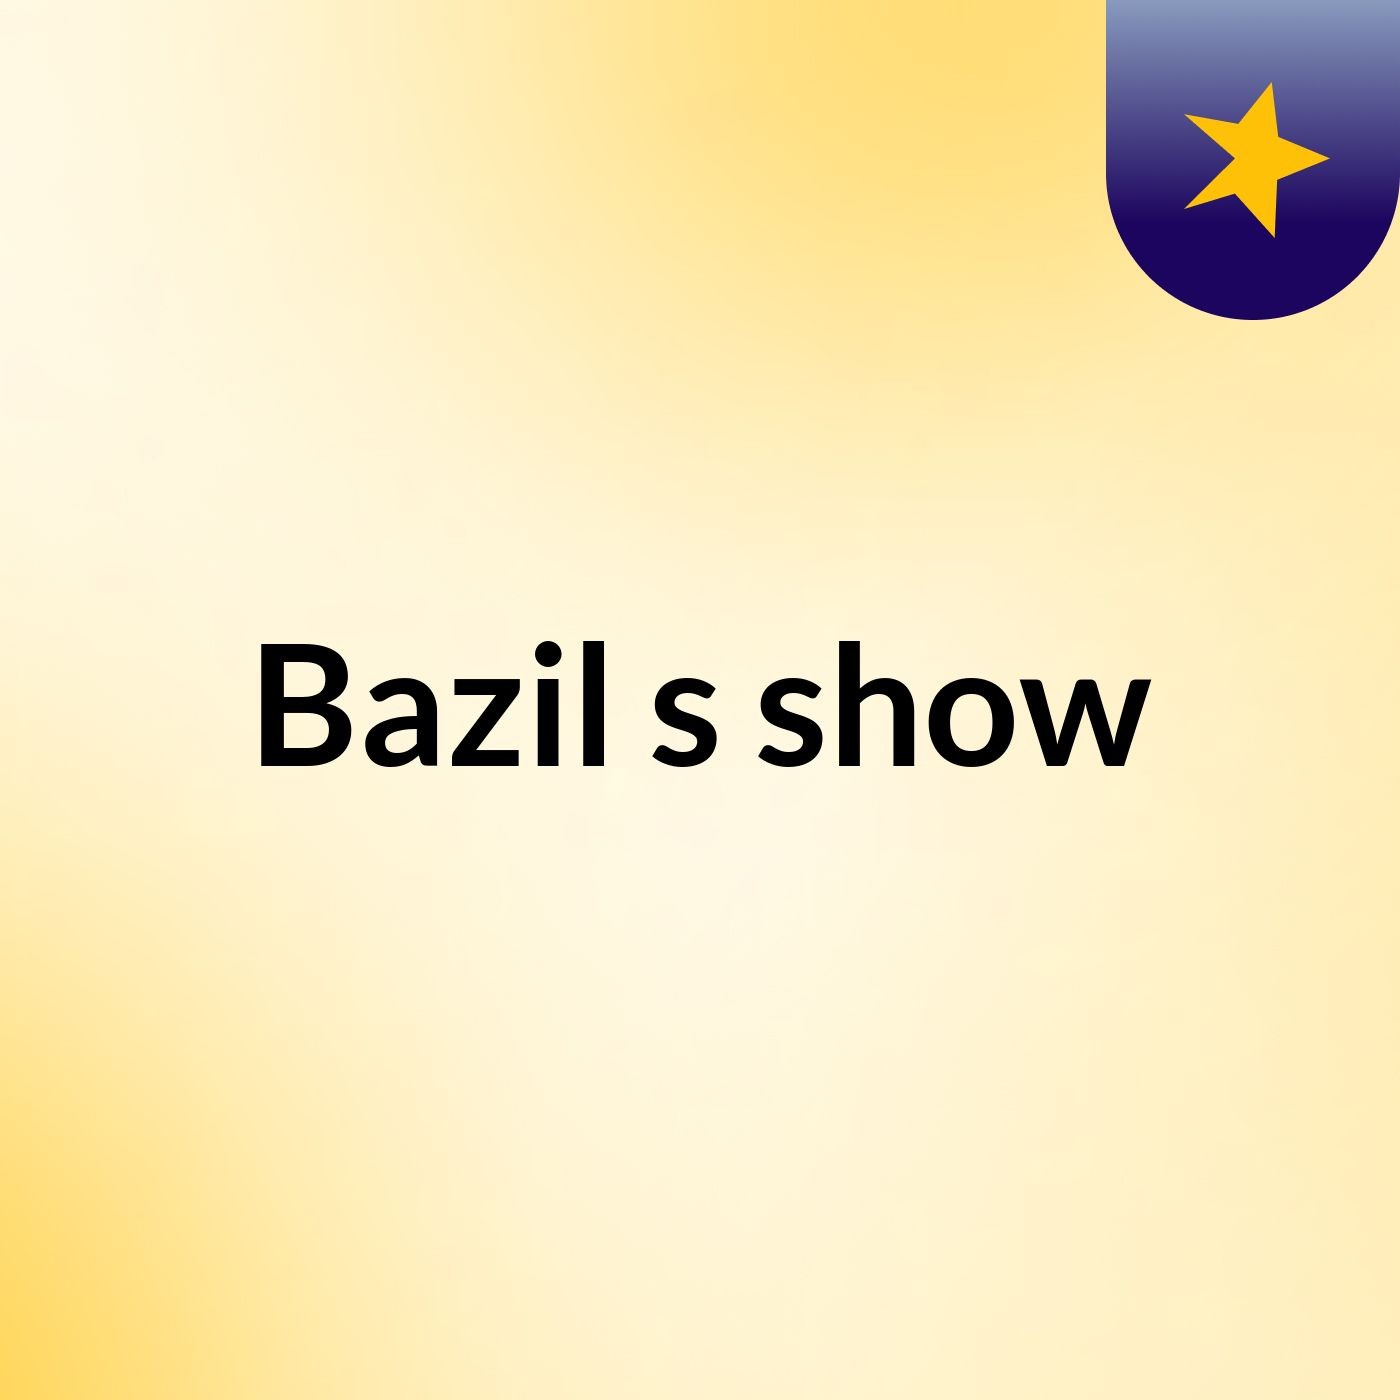 Bazil's show